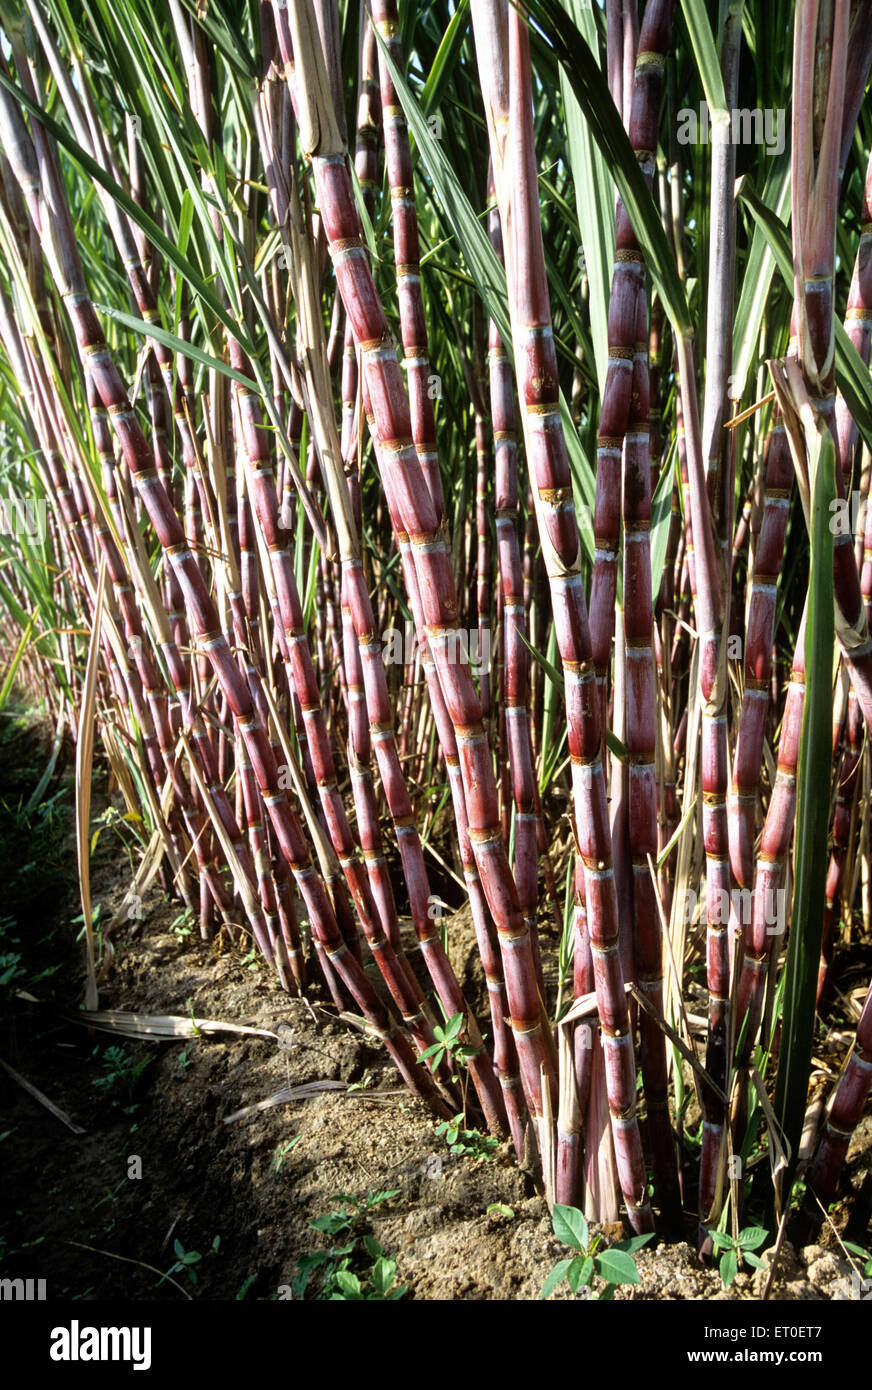 Sugar cane growing in an organic farm at Sathyamangalam Tamil Nadu India - maa 177821 Stock Photo